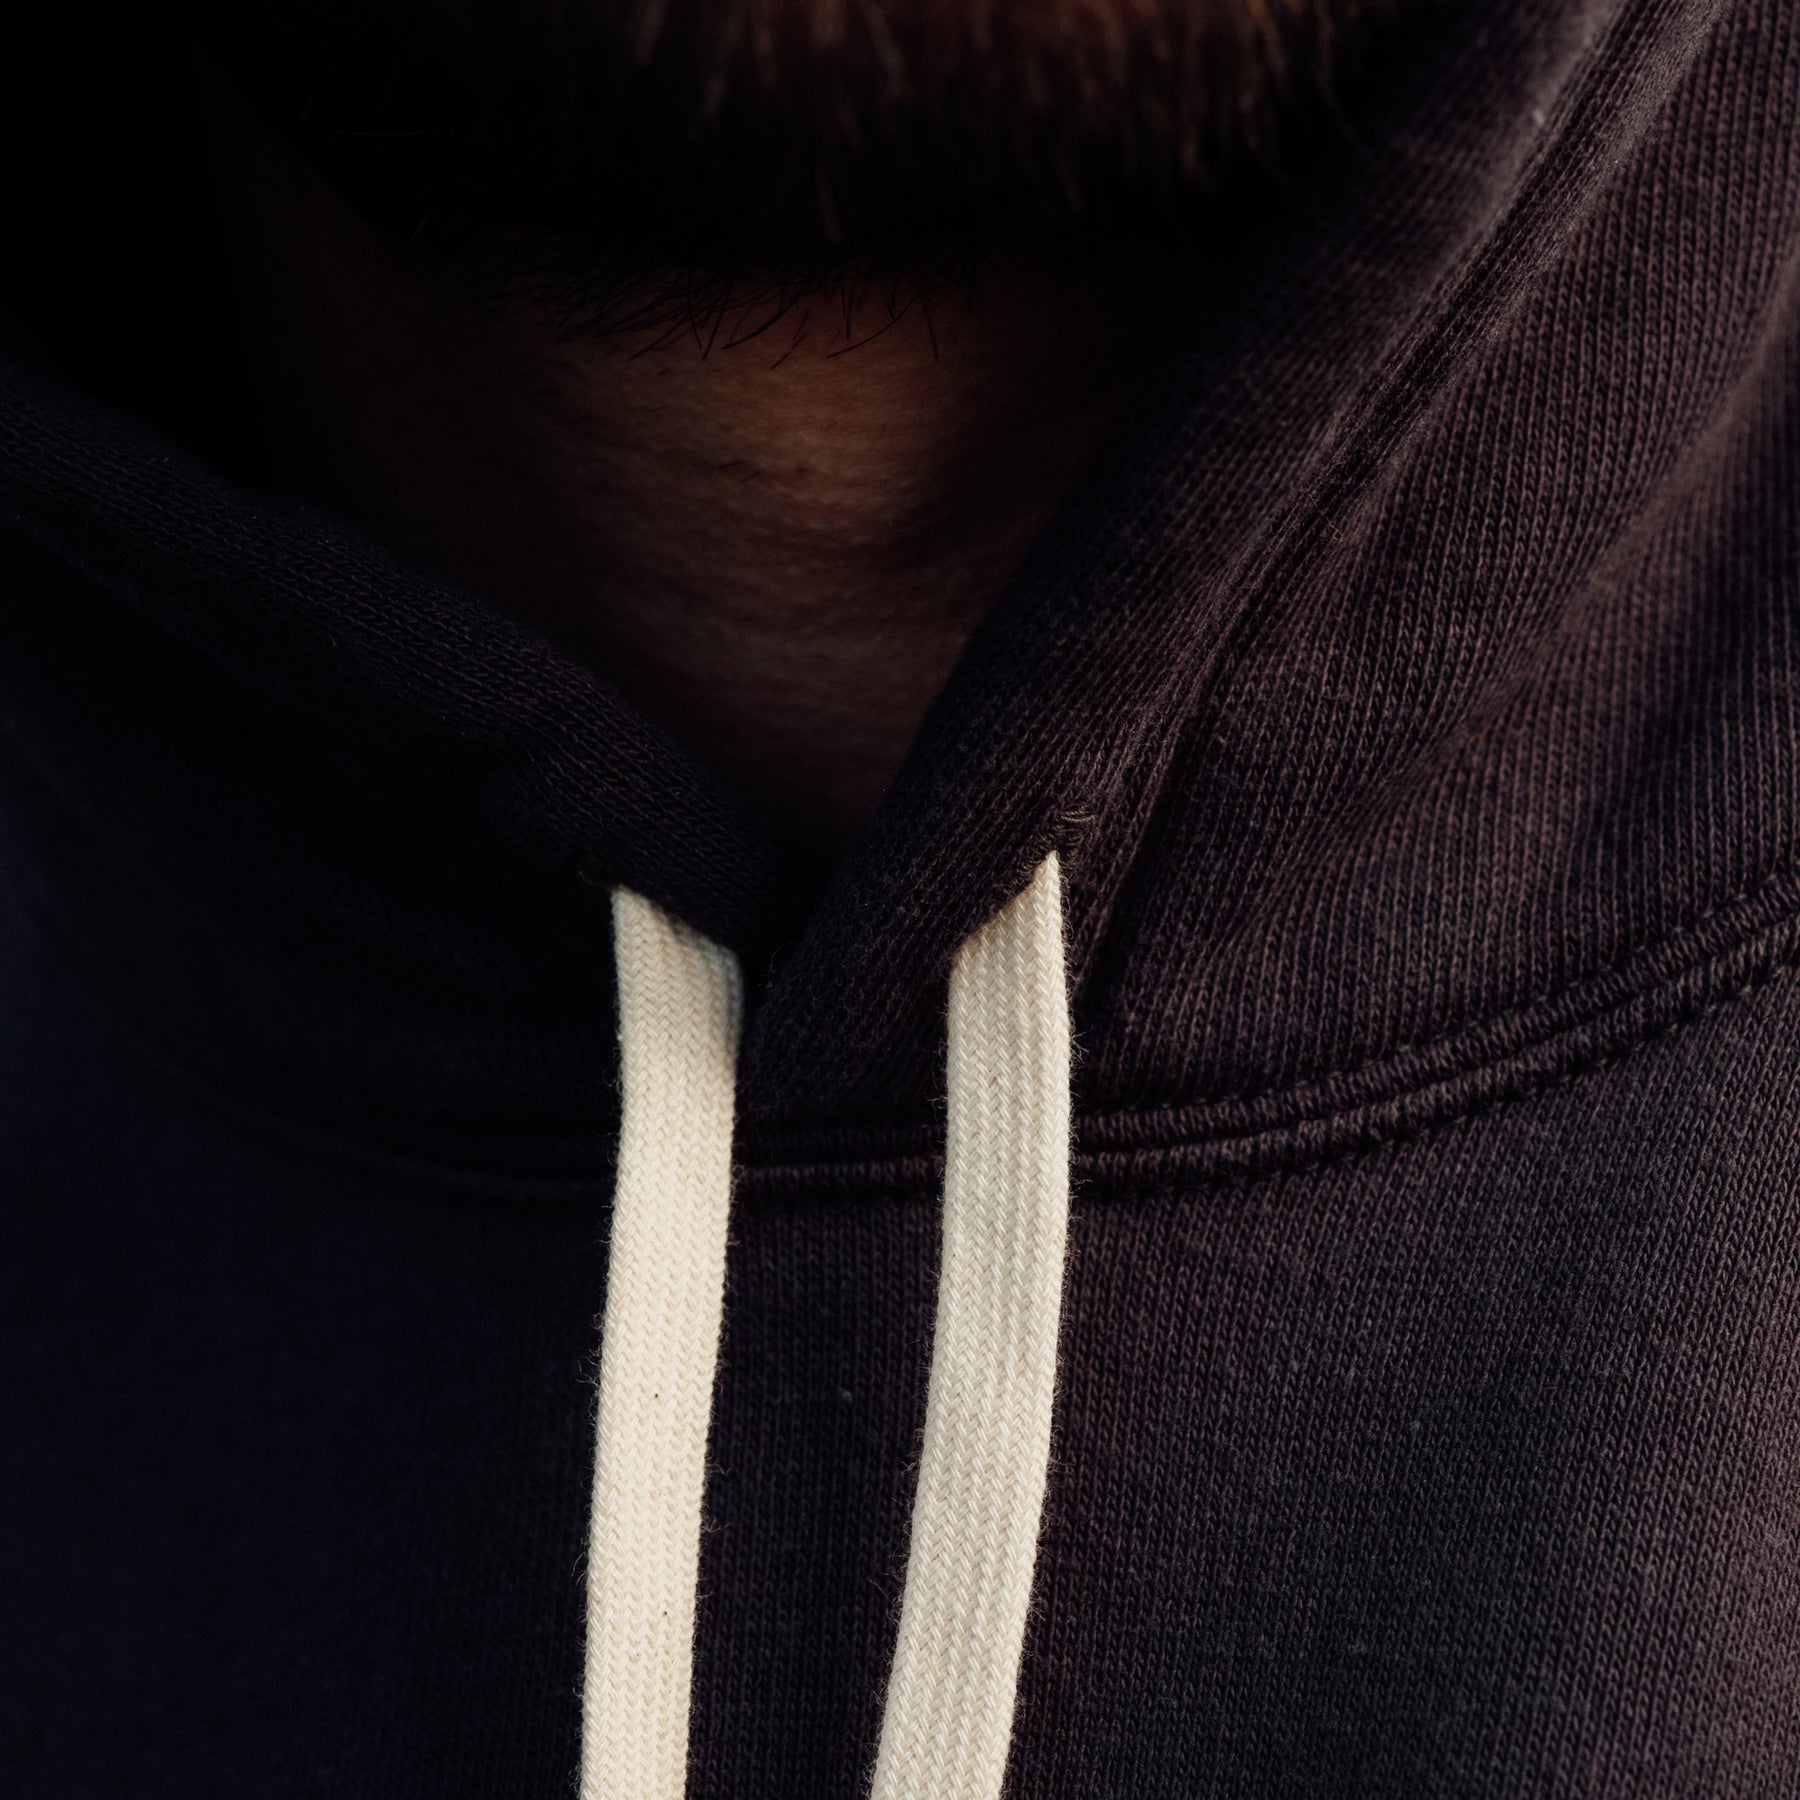 The Flat Head Sweatshirt Hoodie Brushed Lining Made in Japan Light Black Print